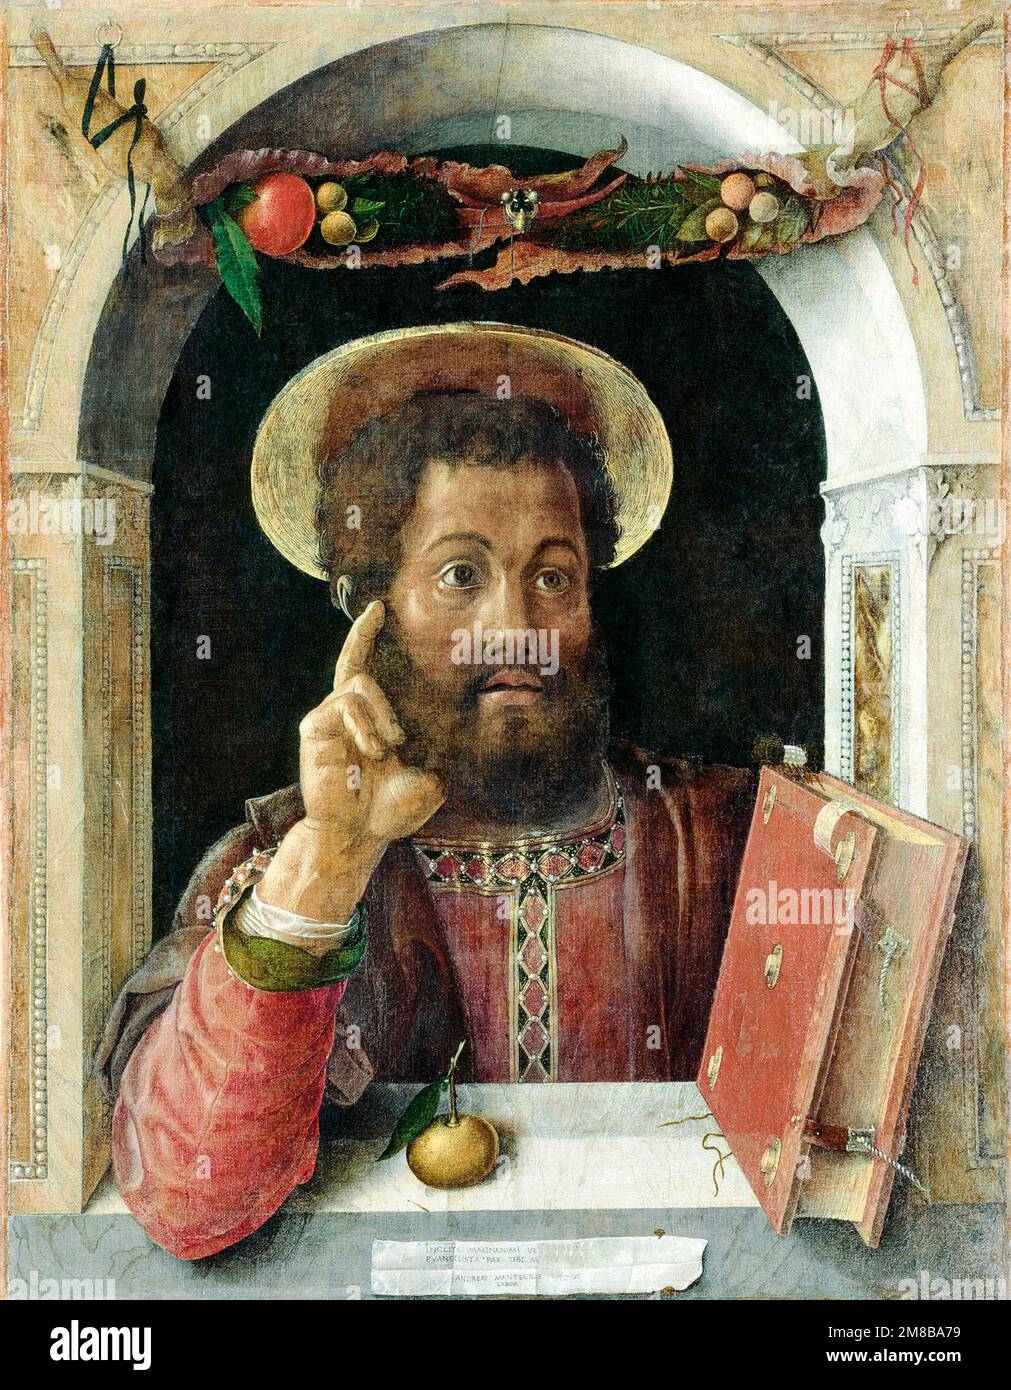 Saint Mark l'évangéliste, peinture dans les médias mixtes par Andrea Mantegna, vers 1450 Banque D'Images